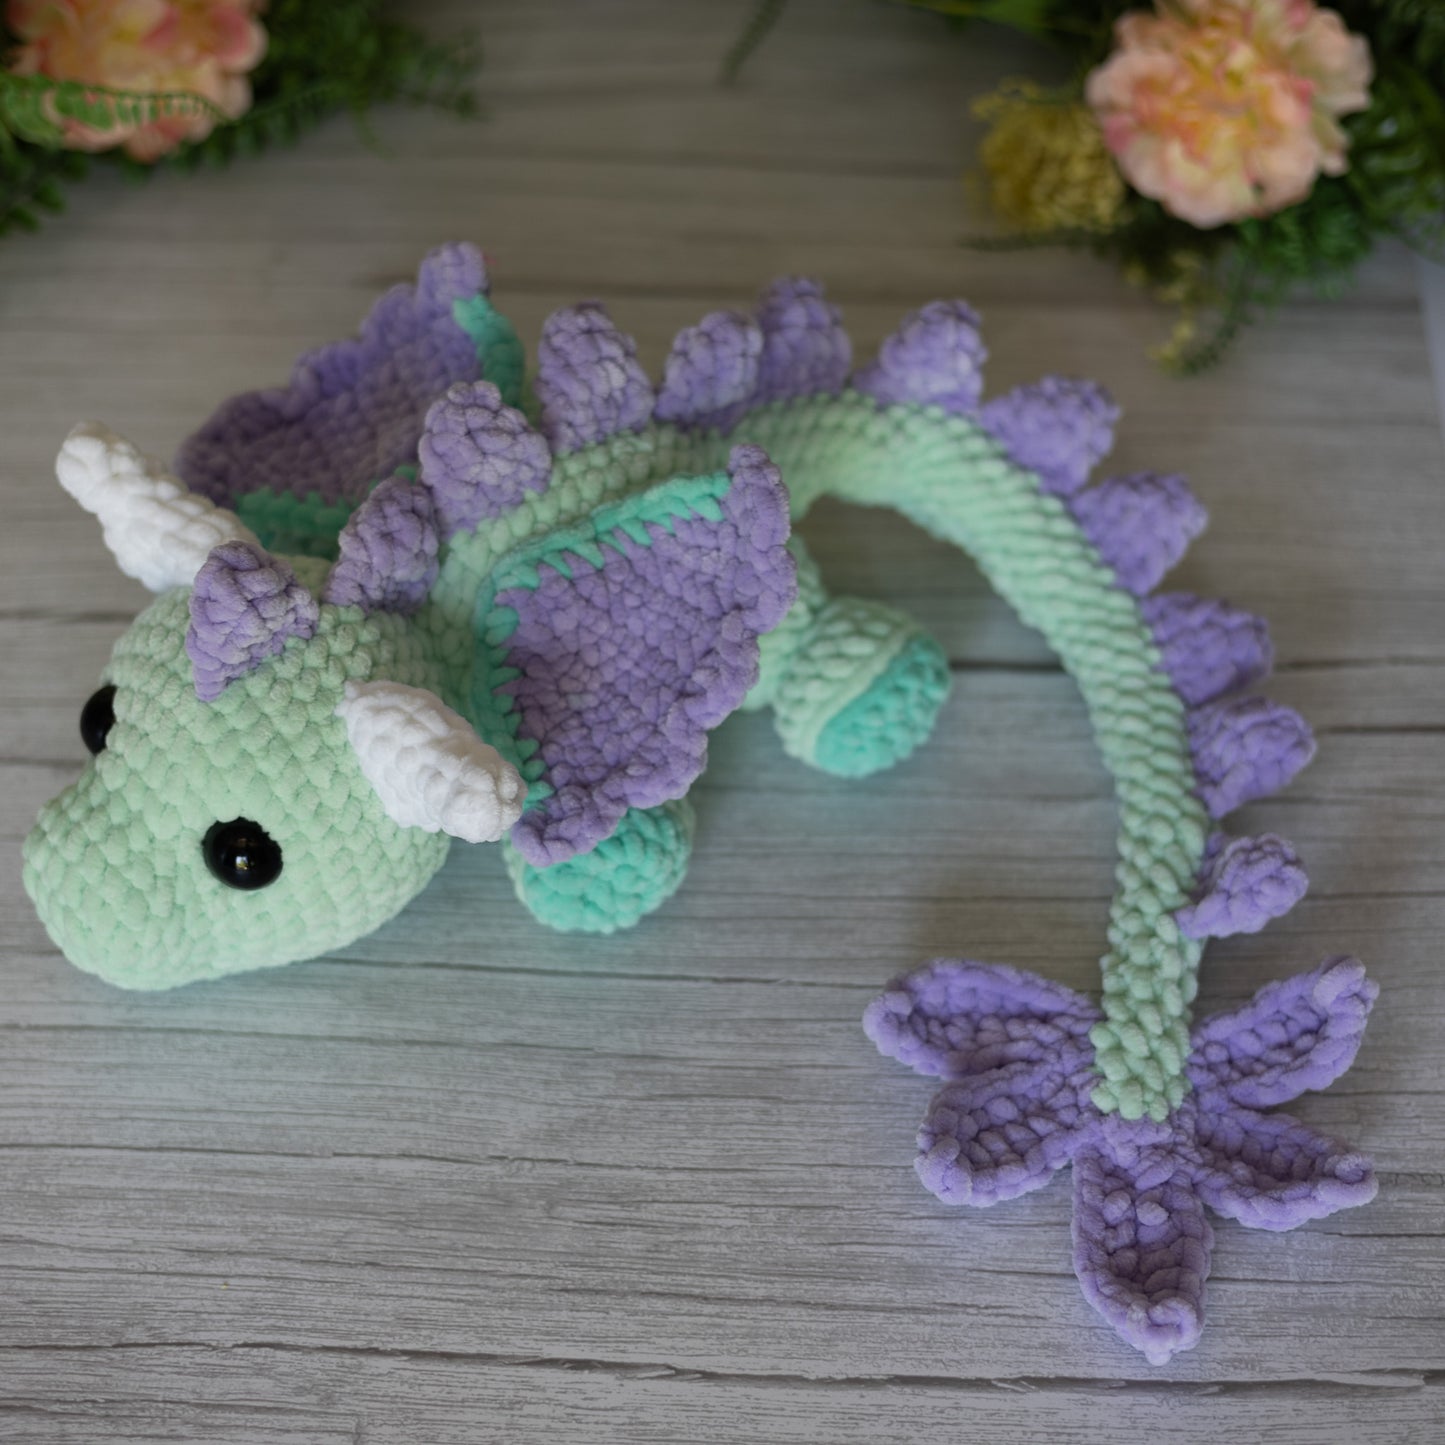 Dragon Crochet Plush Toy